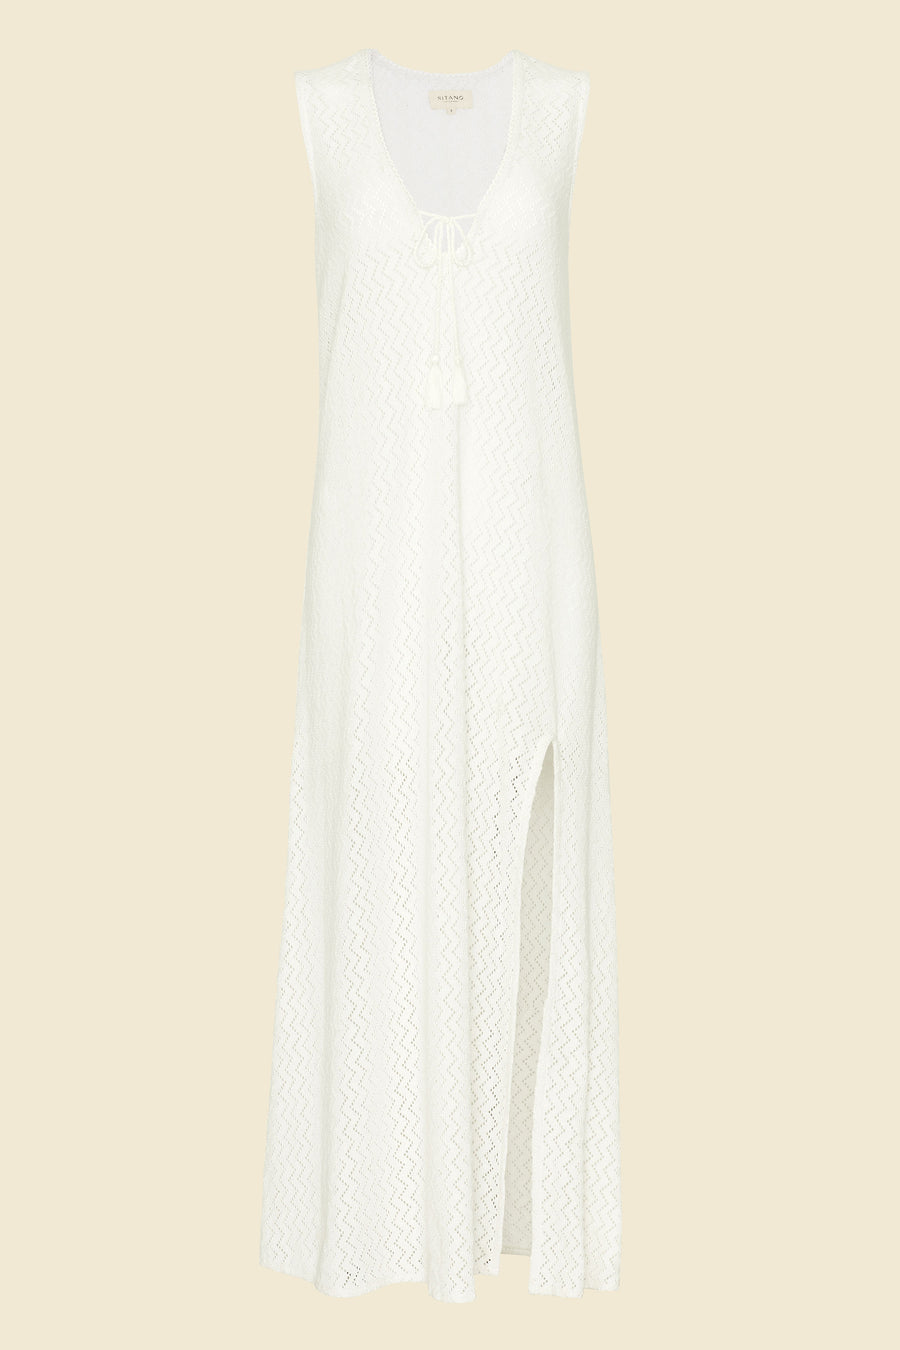 Sorrento Dress - White Crochet (Pre-order)